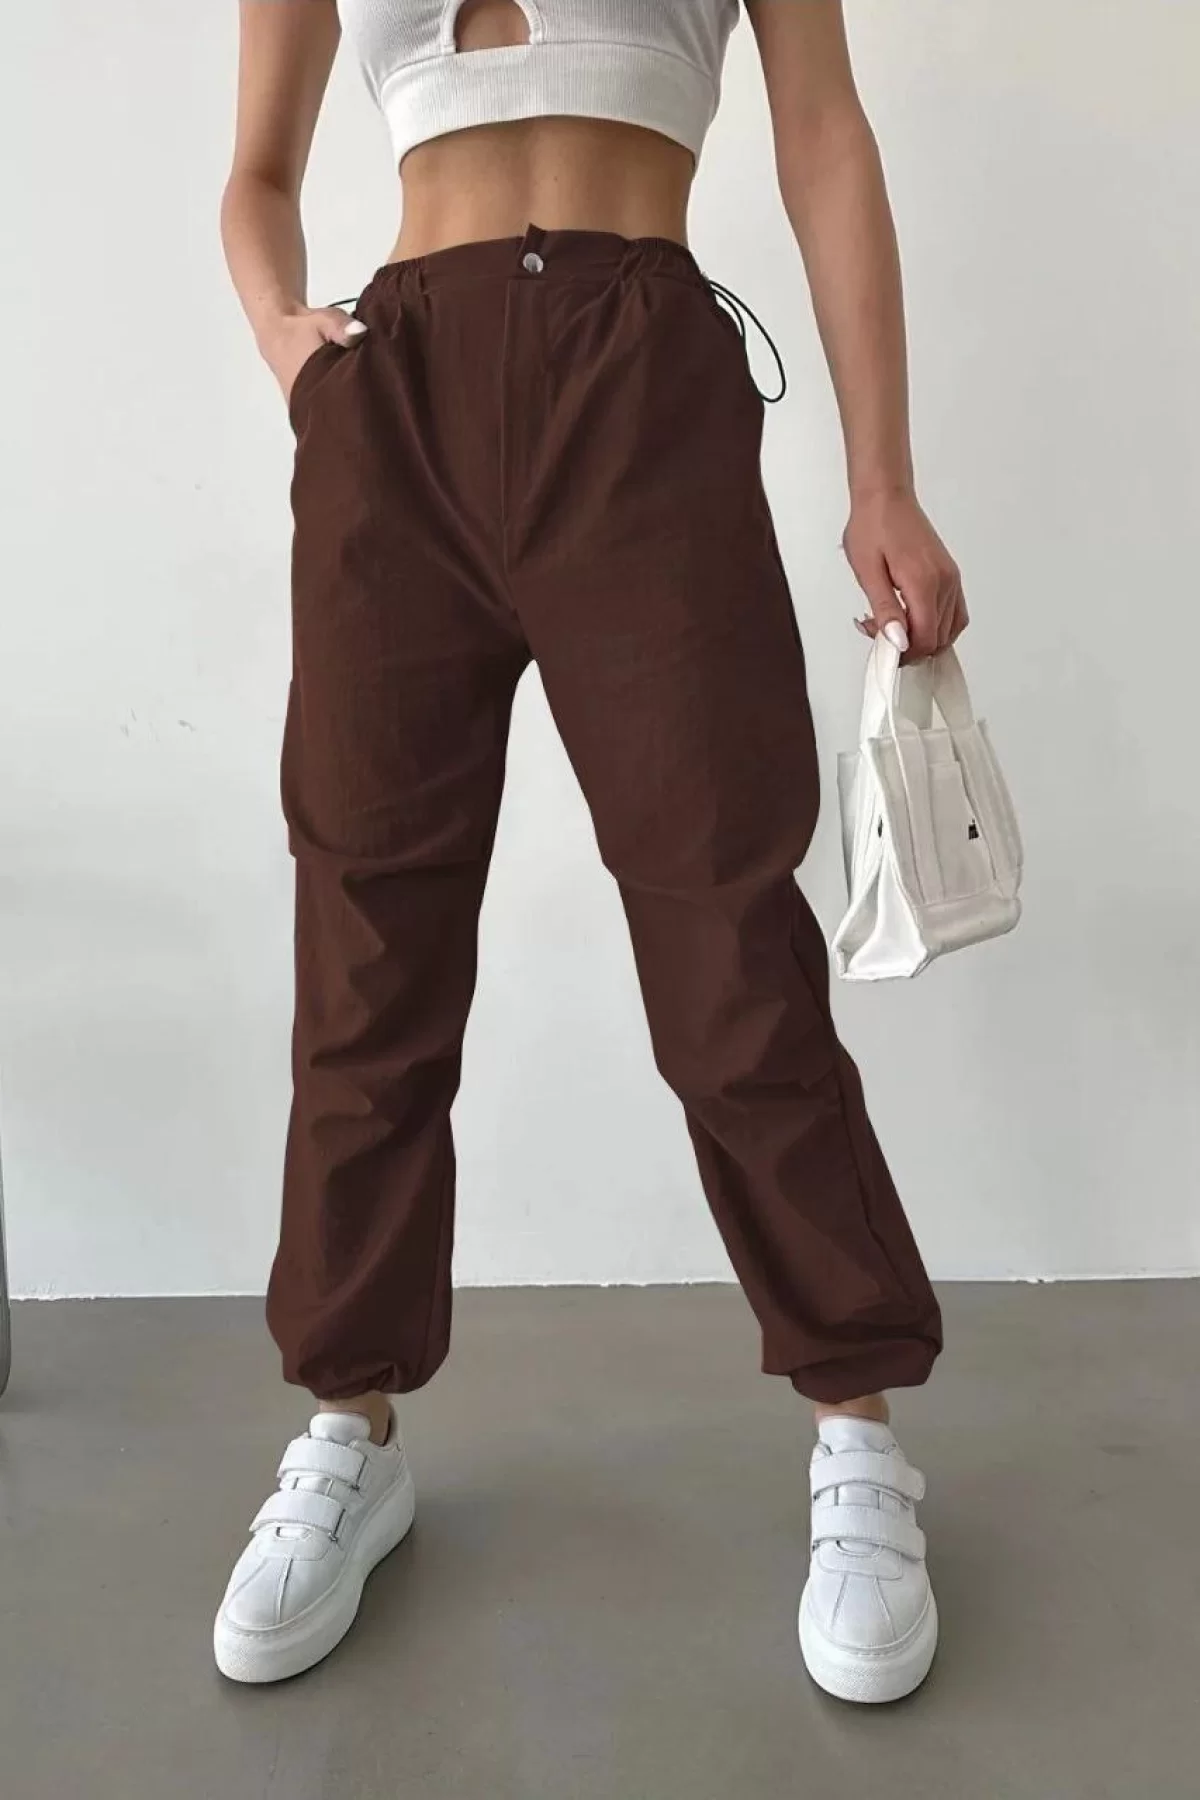 Kadın Paraşüt Kumaş Beli Lastikli Pantalon - Kahverengi